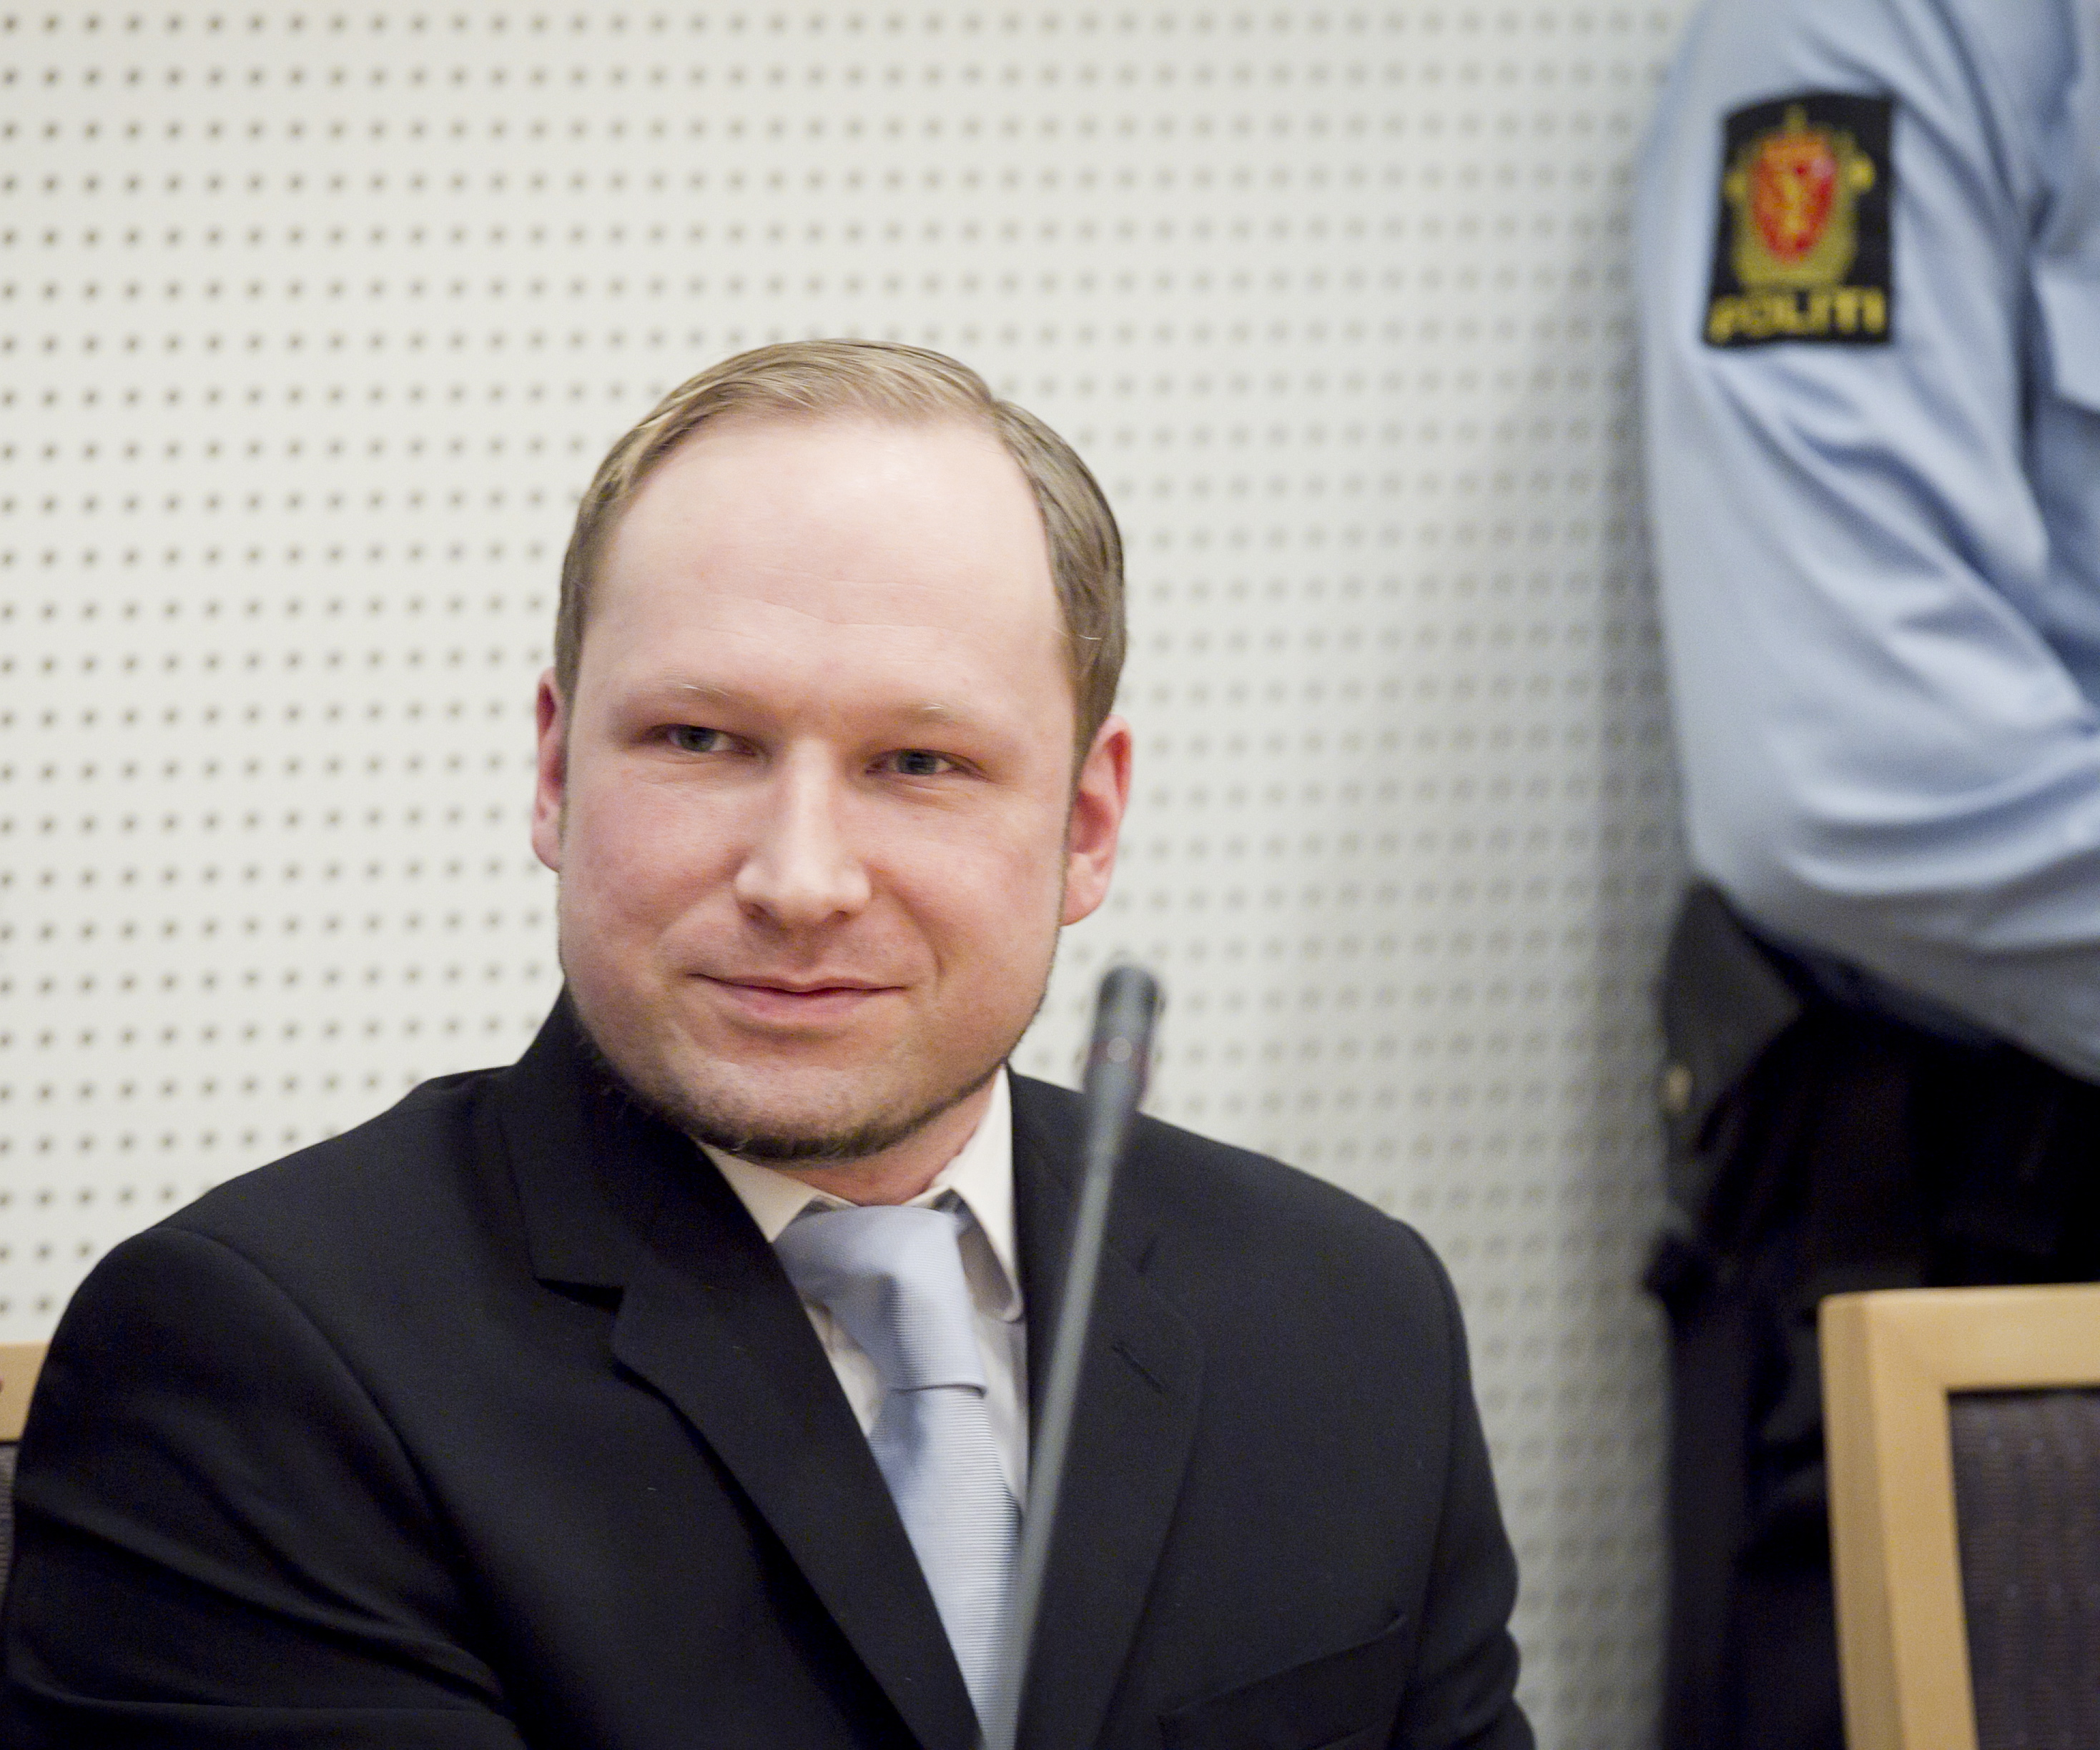 Anders Behring Breivik, Norge, Utøya, Oslo, Terrordåd, Bombattentat